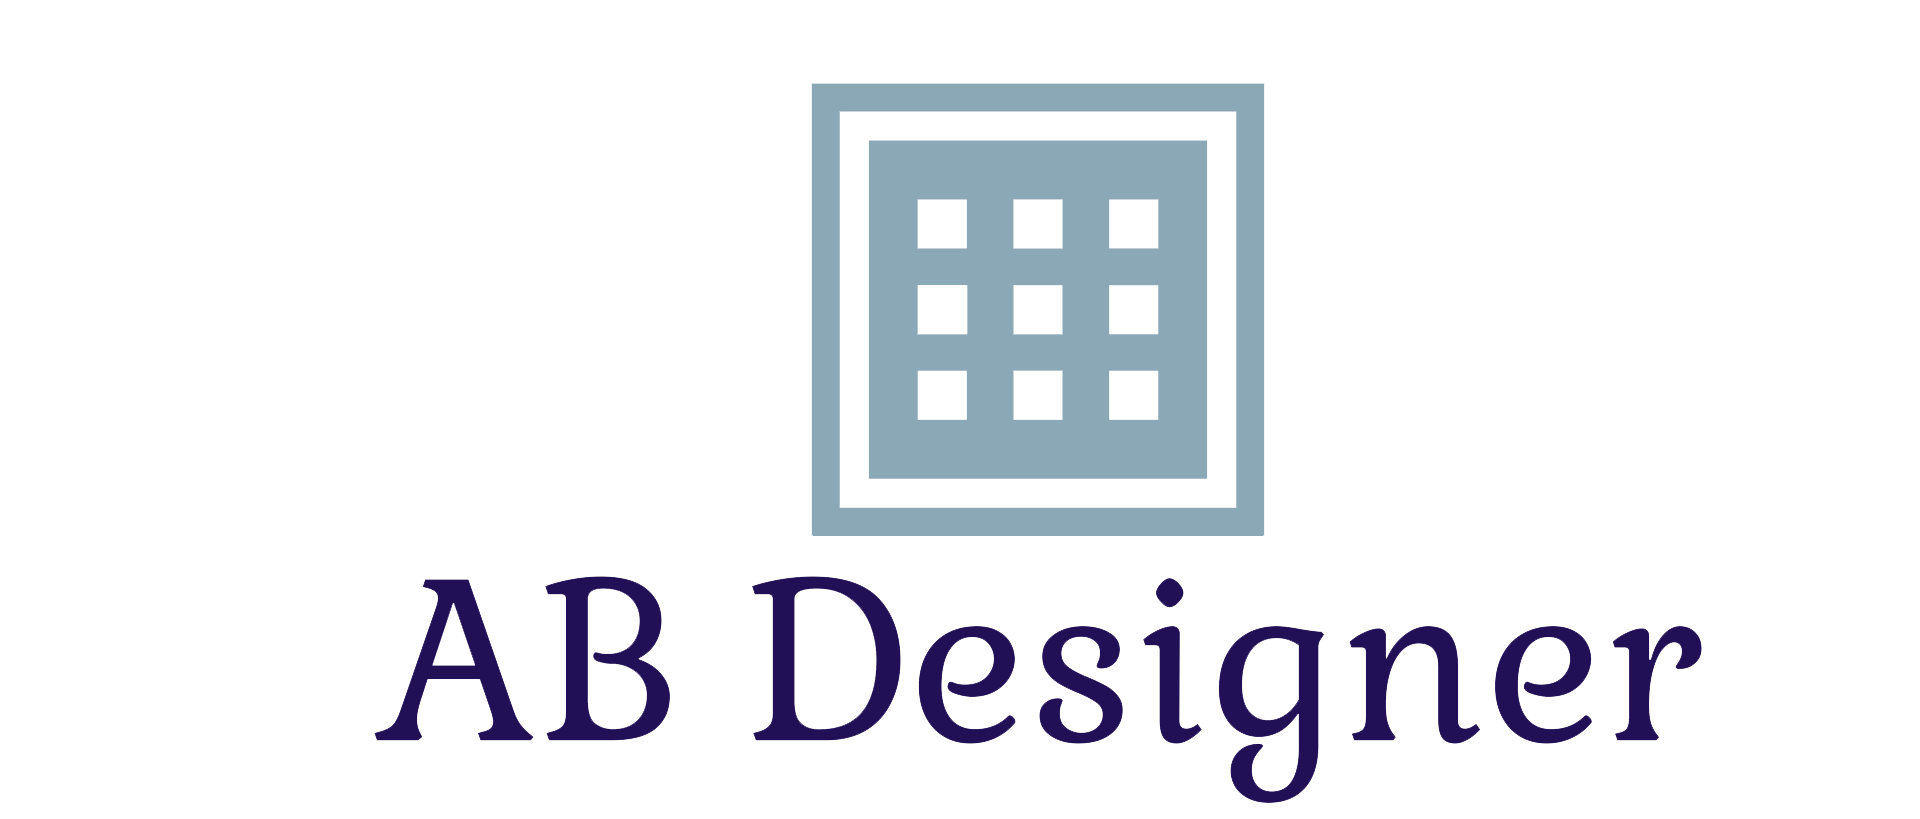 AB Designer